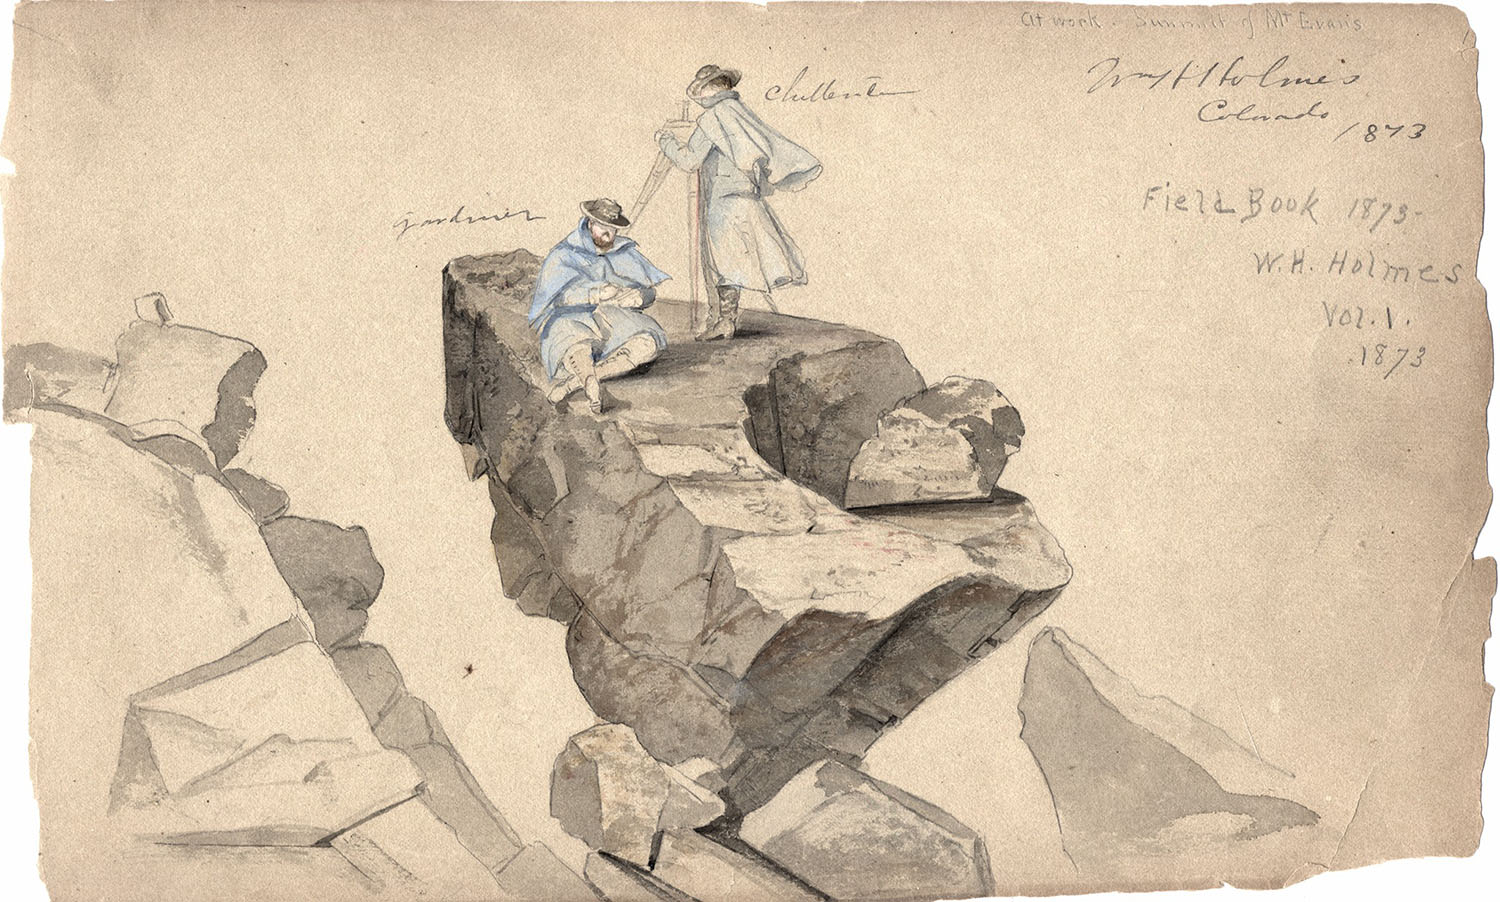 Watercolor sketch of members of the Hayden Survey in Colorado Territory